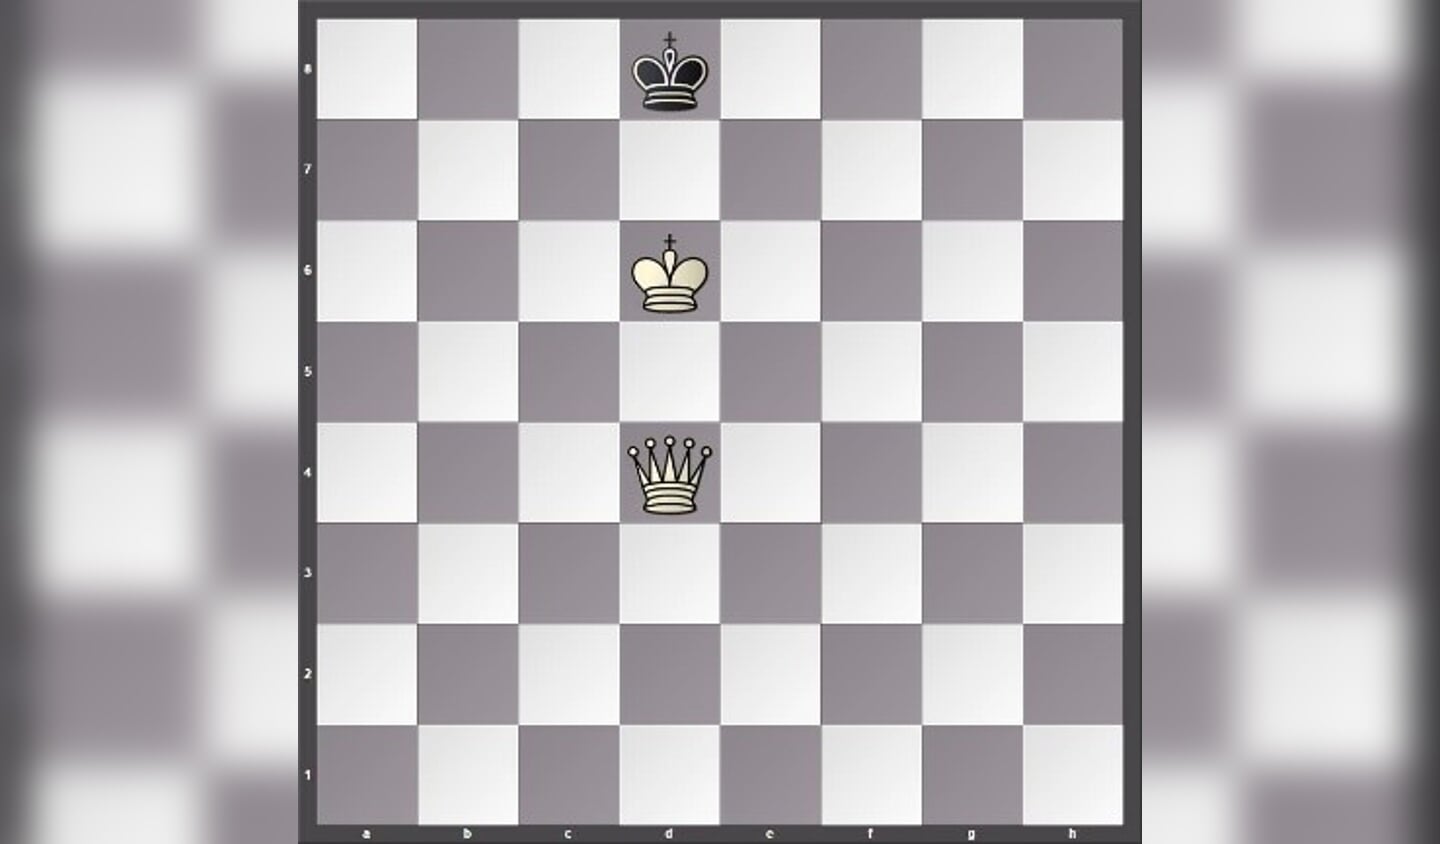 Links wint wit via Dh8 en het is schaakmat.